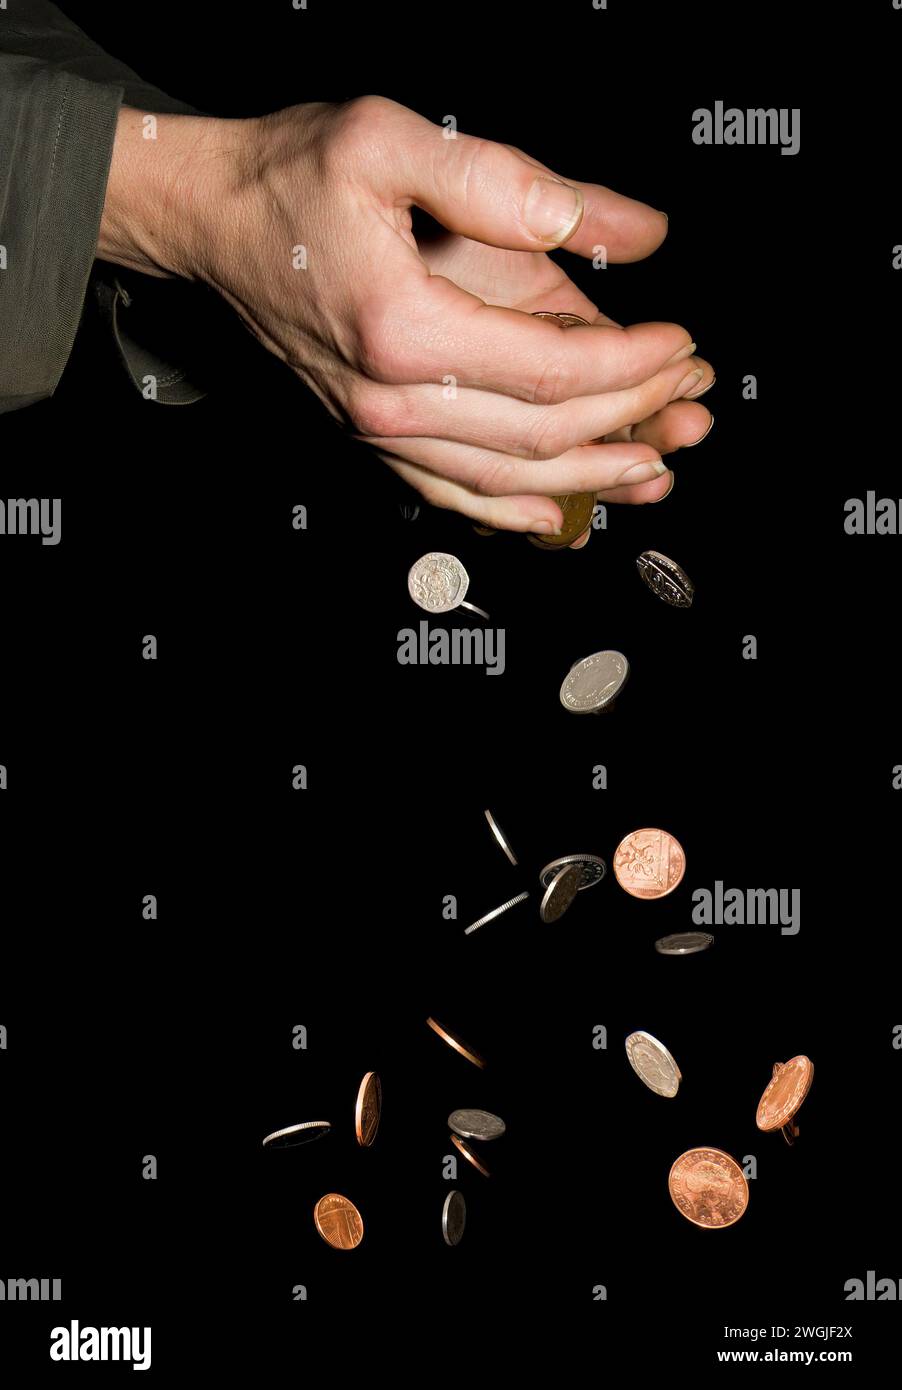 Il maschio caucasico (42 anni) ha mani con denaro che cadono raffigurando il concetto di “denaro che scivola attraverso le mani” o “troppo denaro da tenere” Foto Stock